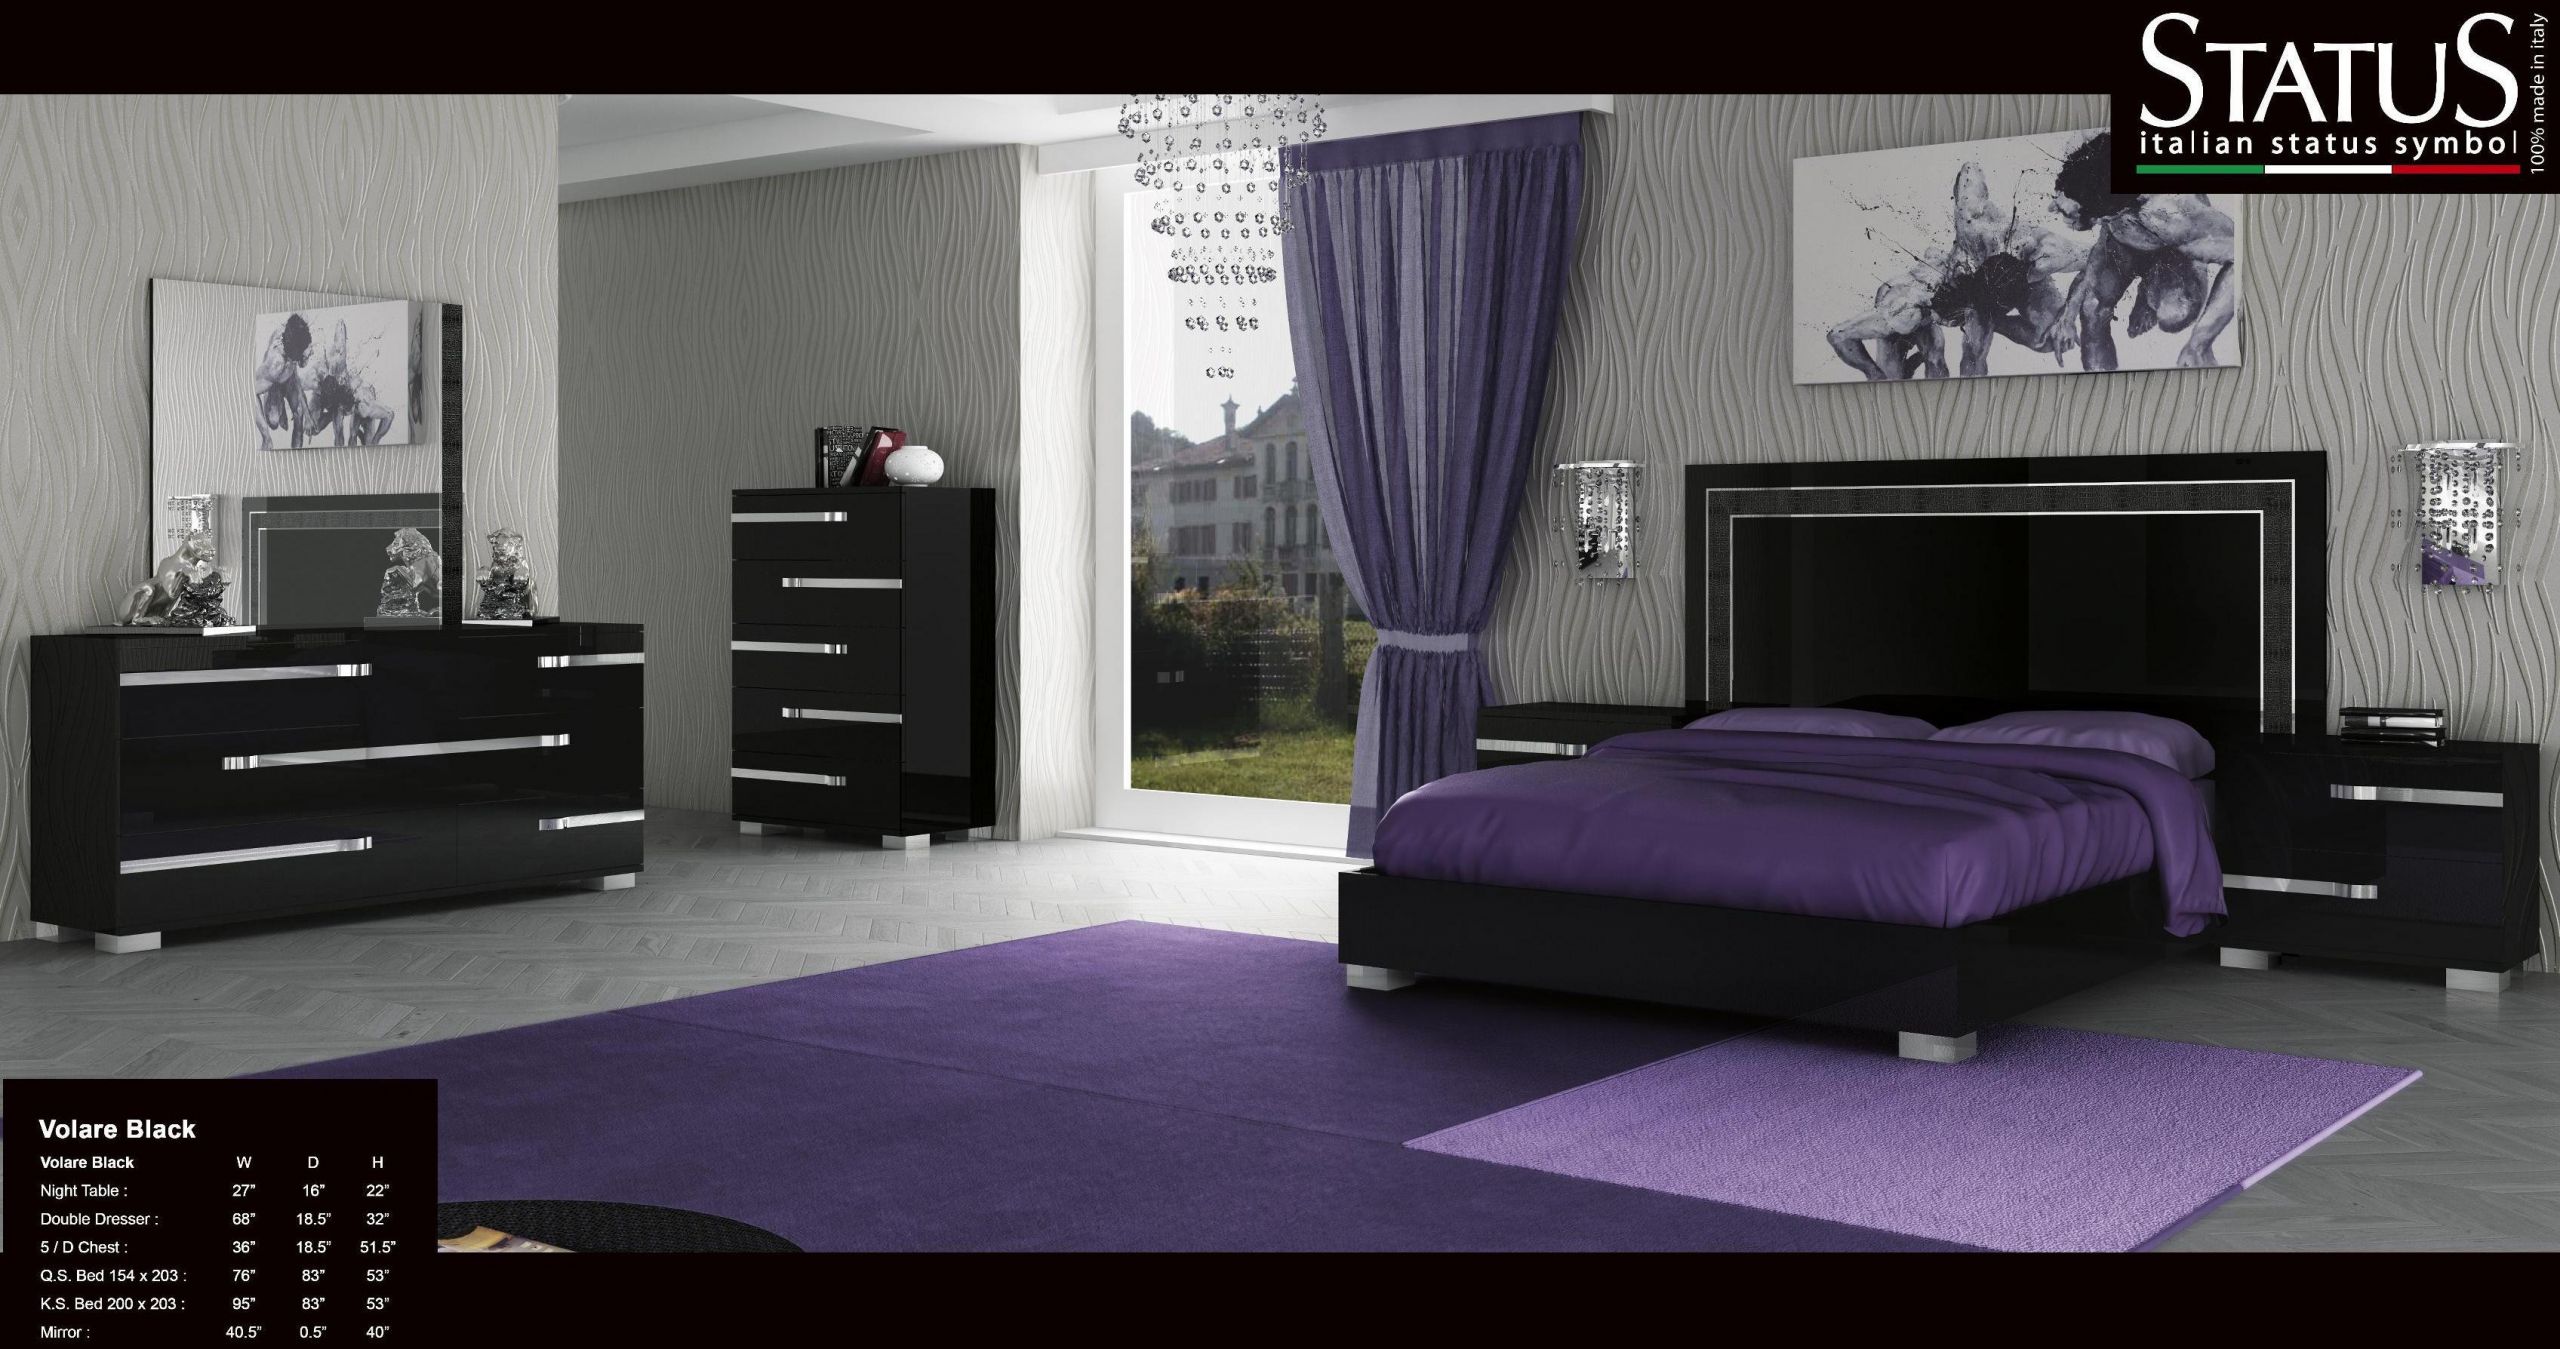 Modern Black Bedroom Set
 VOLARE KING SIZE MODERN BLACK BEDROOM SET 5PC MADE IN